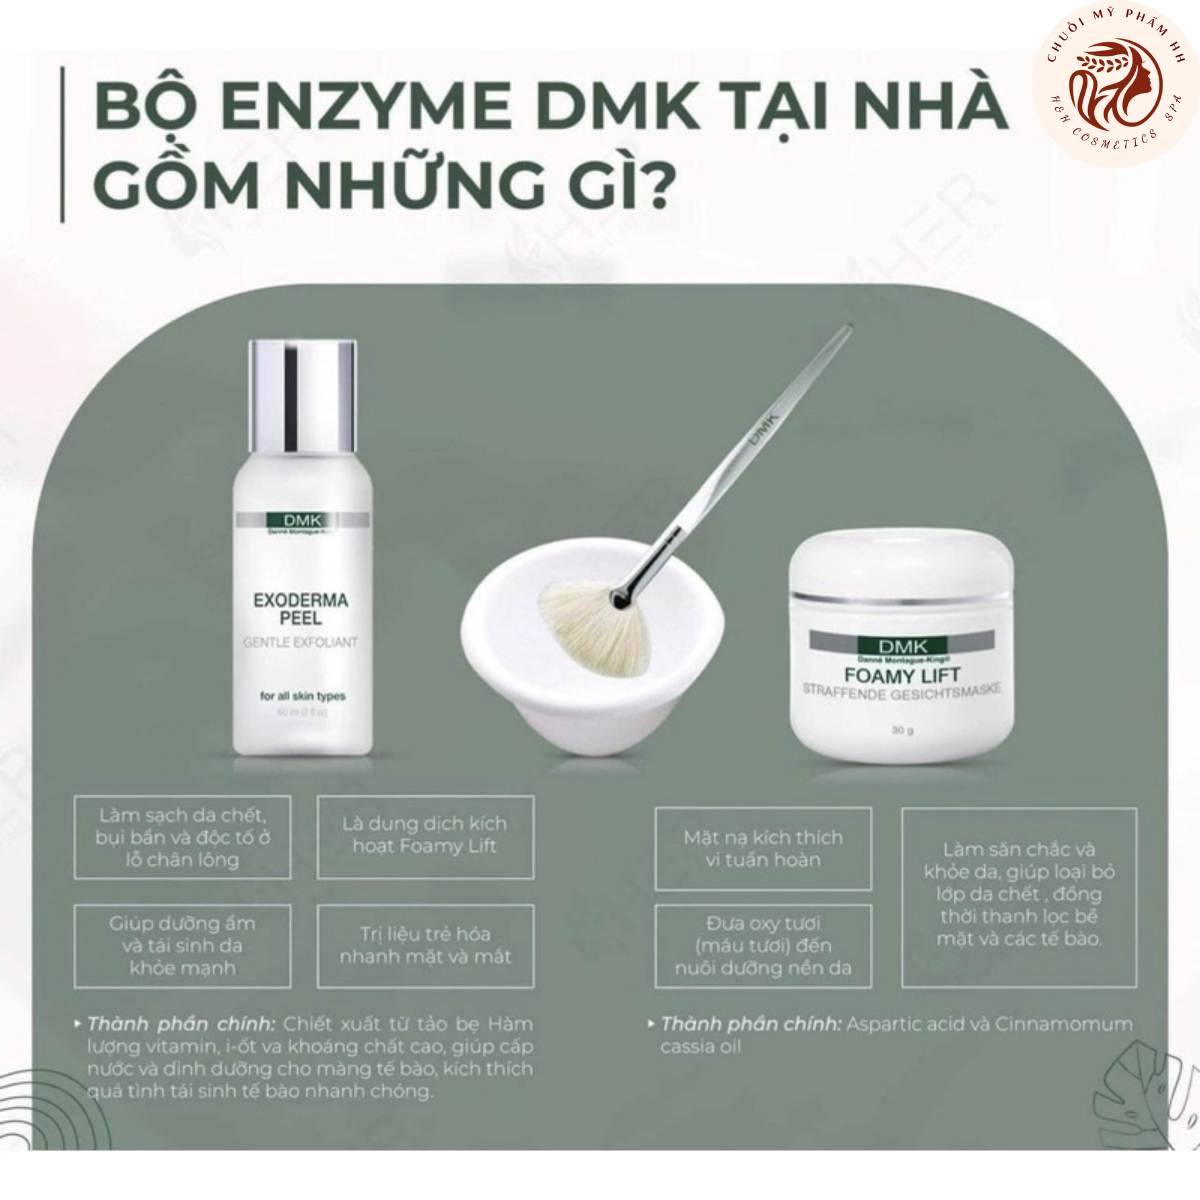 Bộ dưỡng da Enzyme DMK gồm những gì